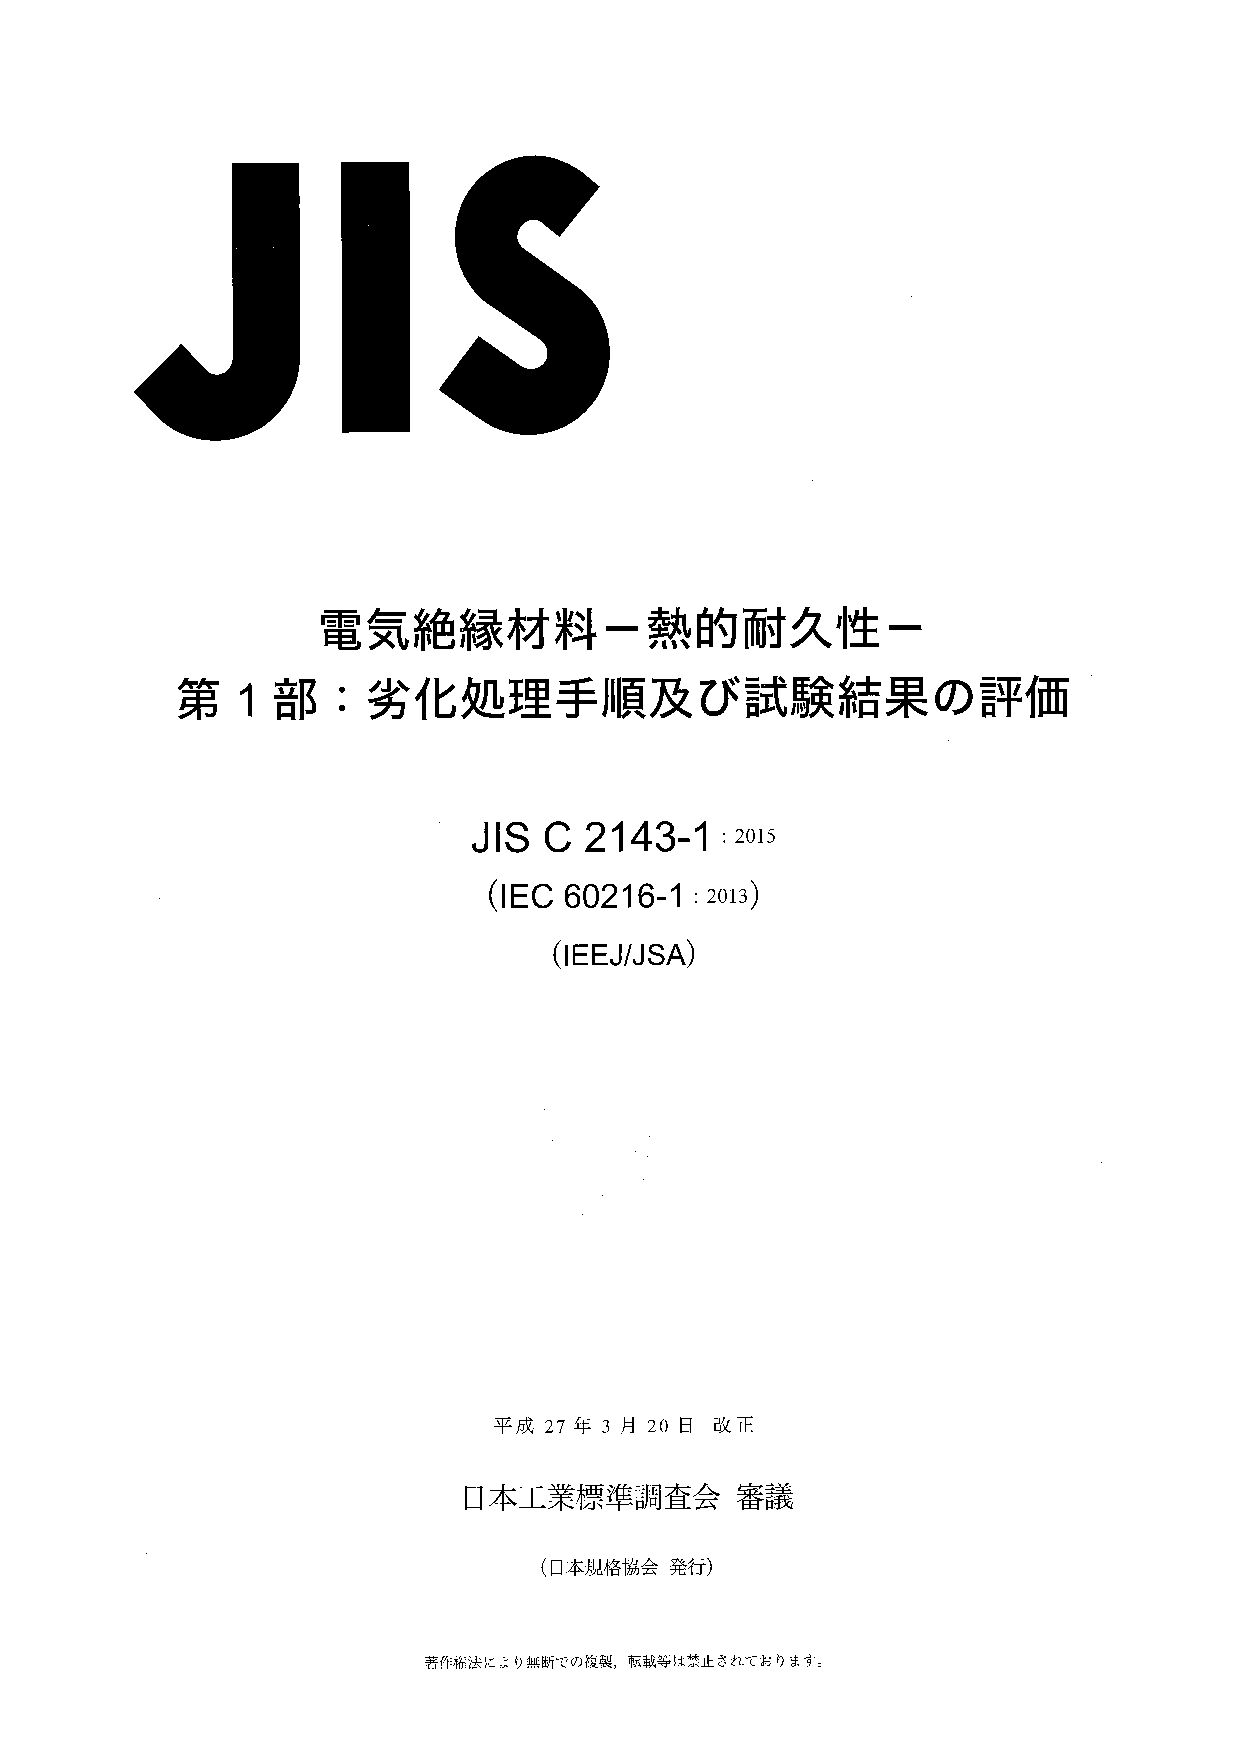 JIS C 2143-1:2015